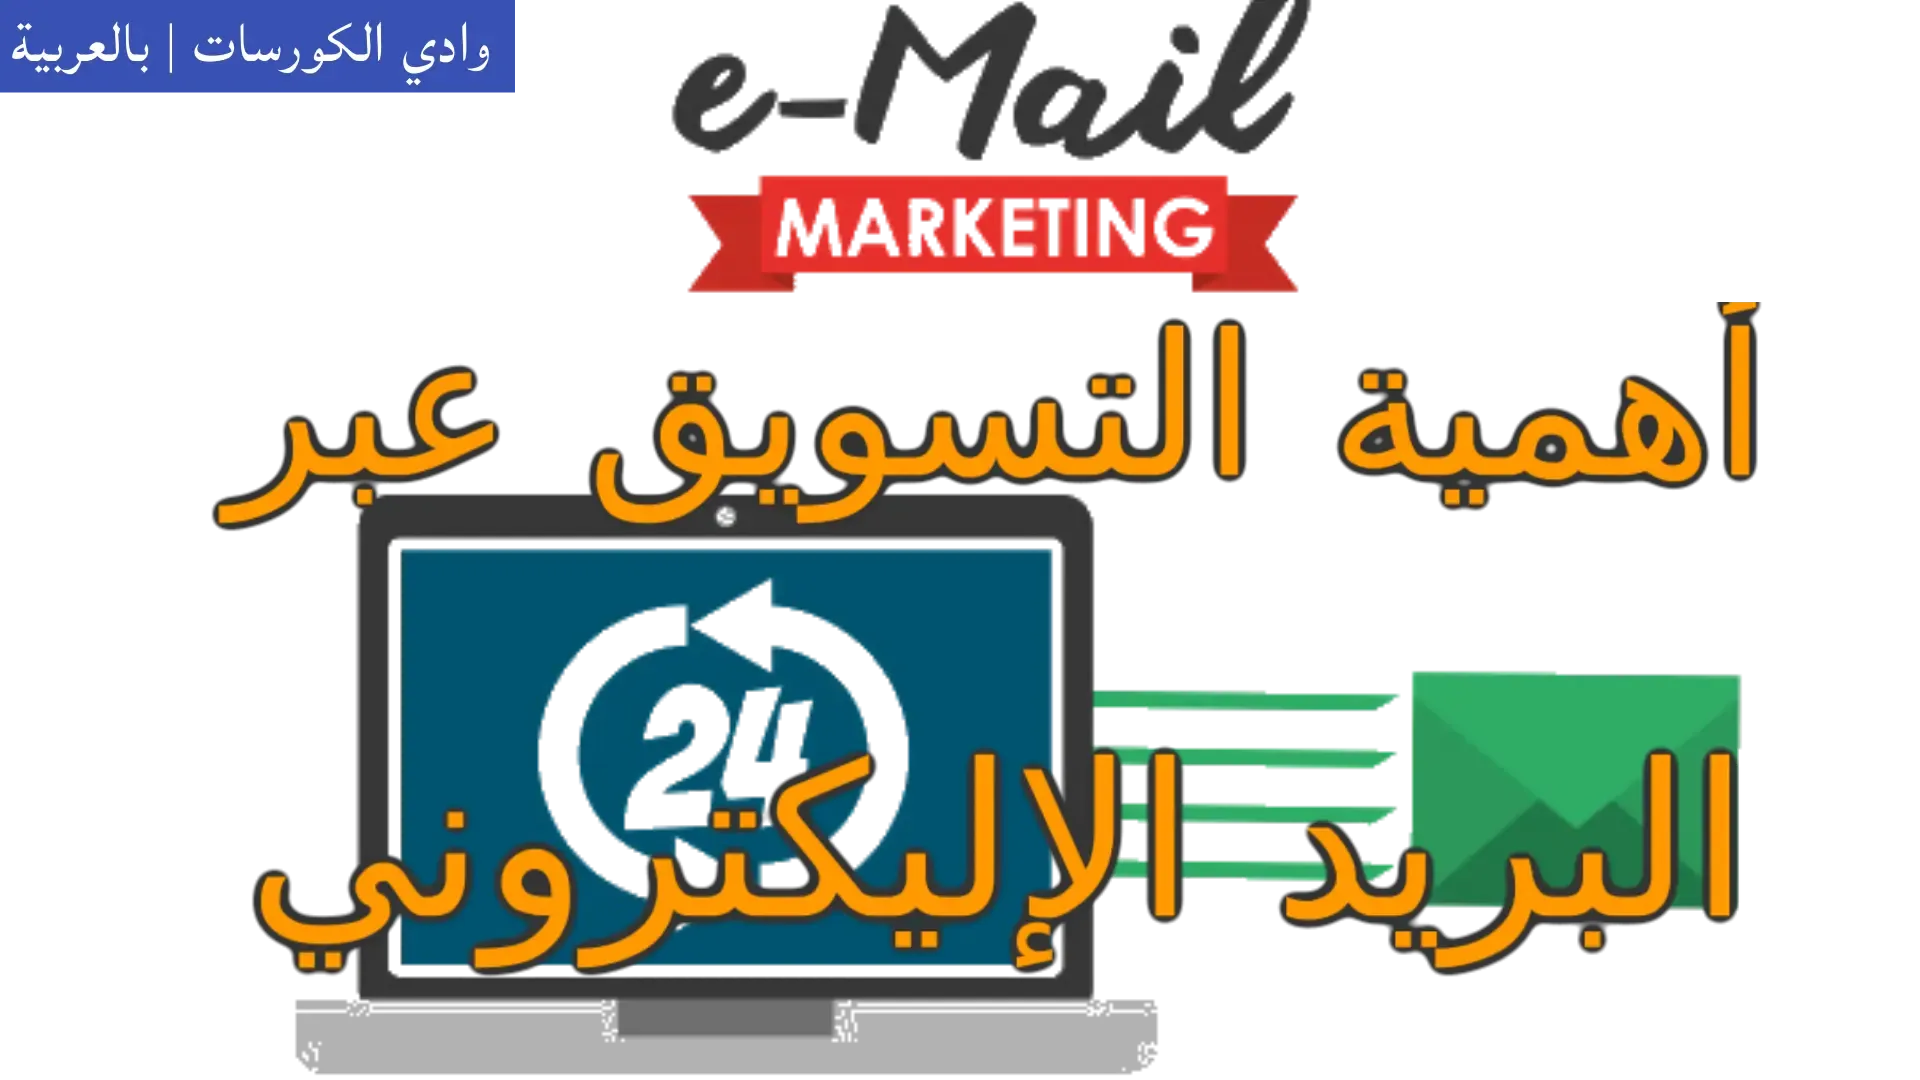 وادي التكنولوجيا | بالعربية: أهمية التسويق عبر البريد الإليكتروني